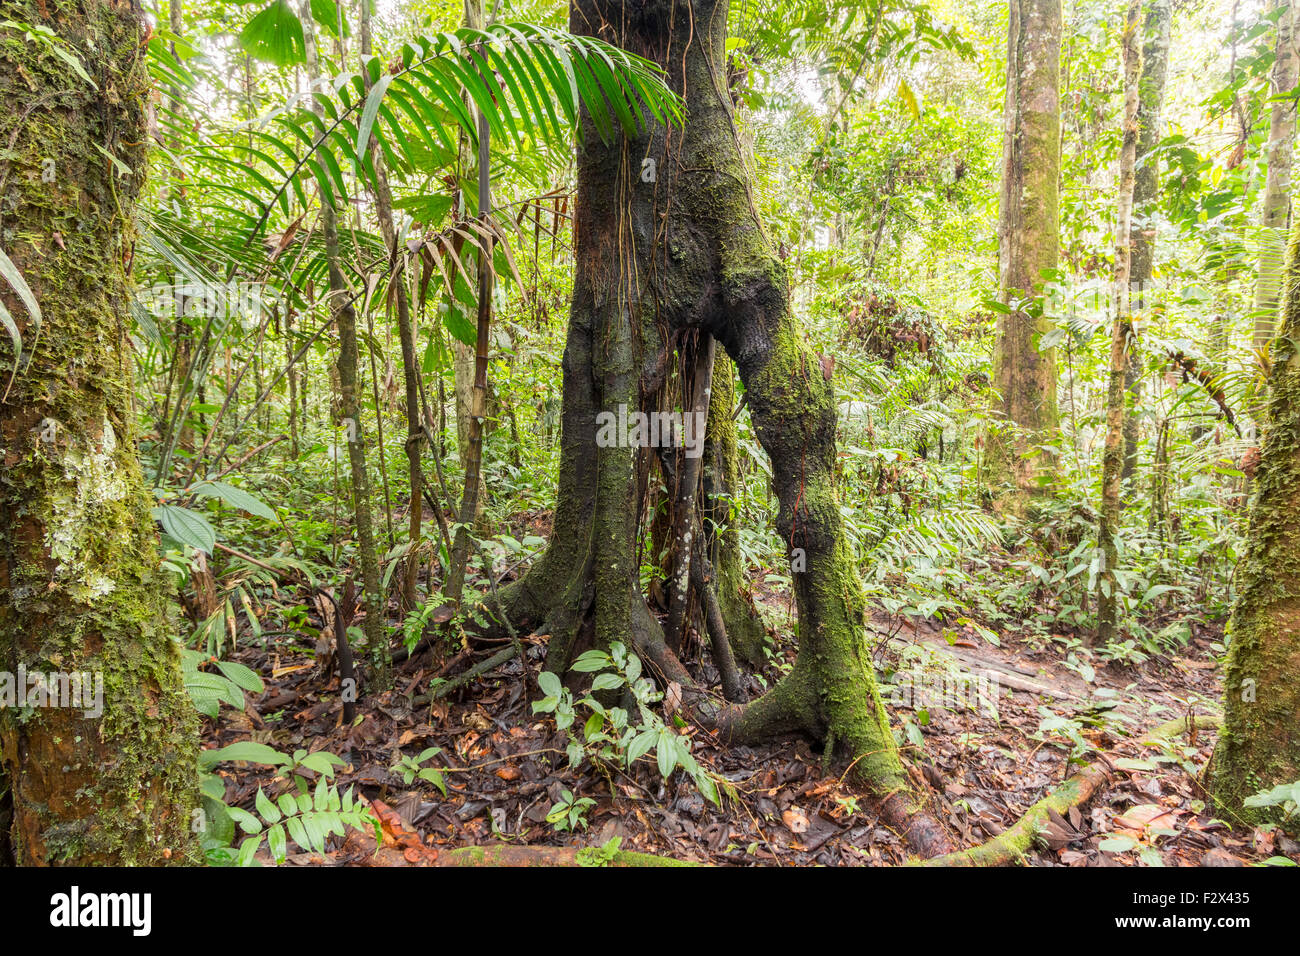 Albero con stilt radici nell'Amazzonia ecuadoriana. Immagine hdr Foto Stock